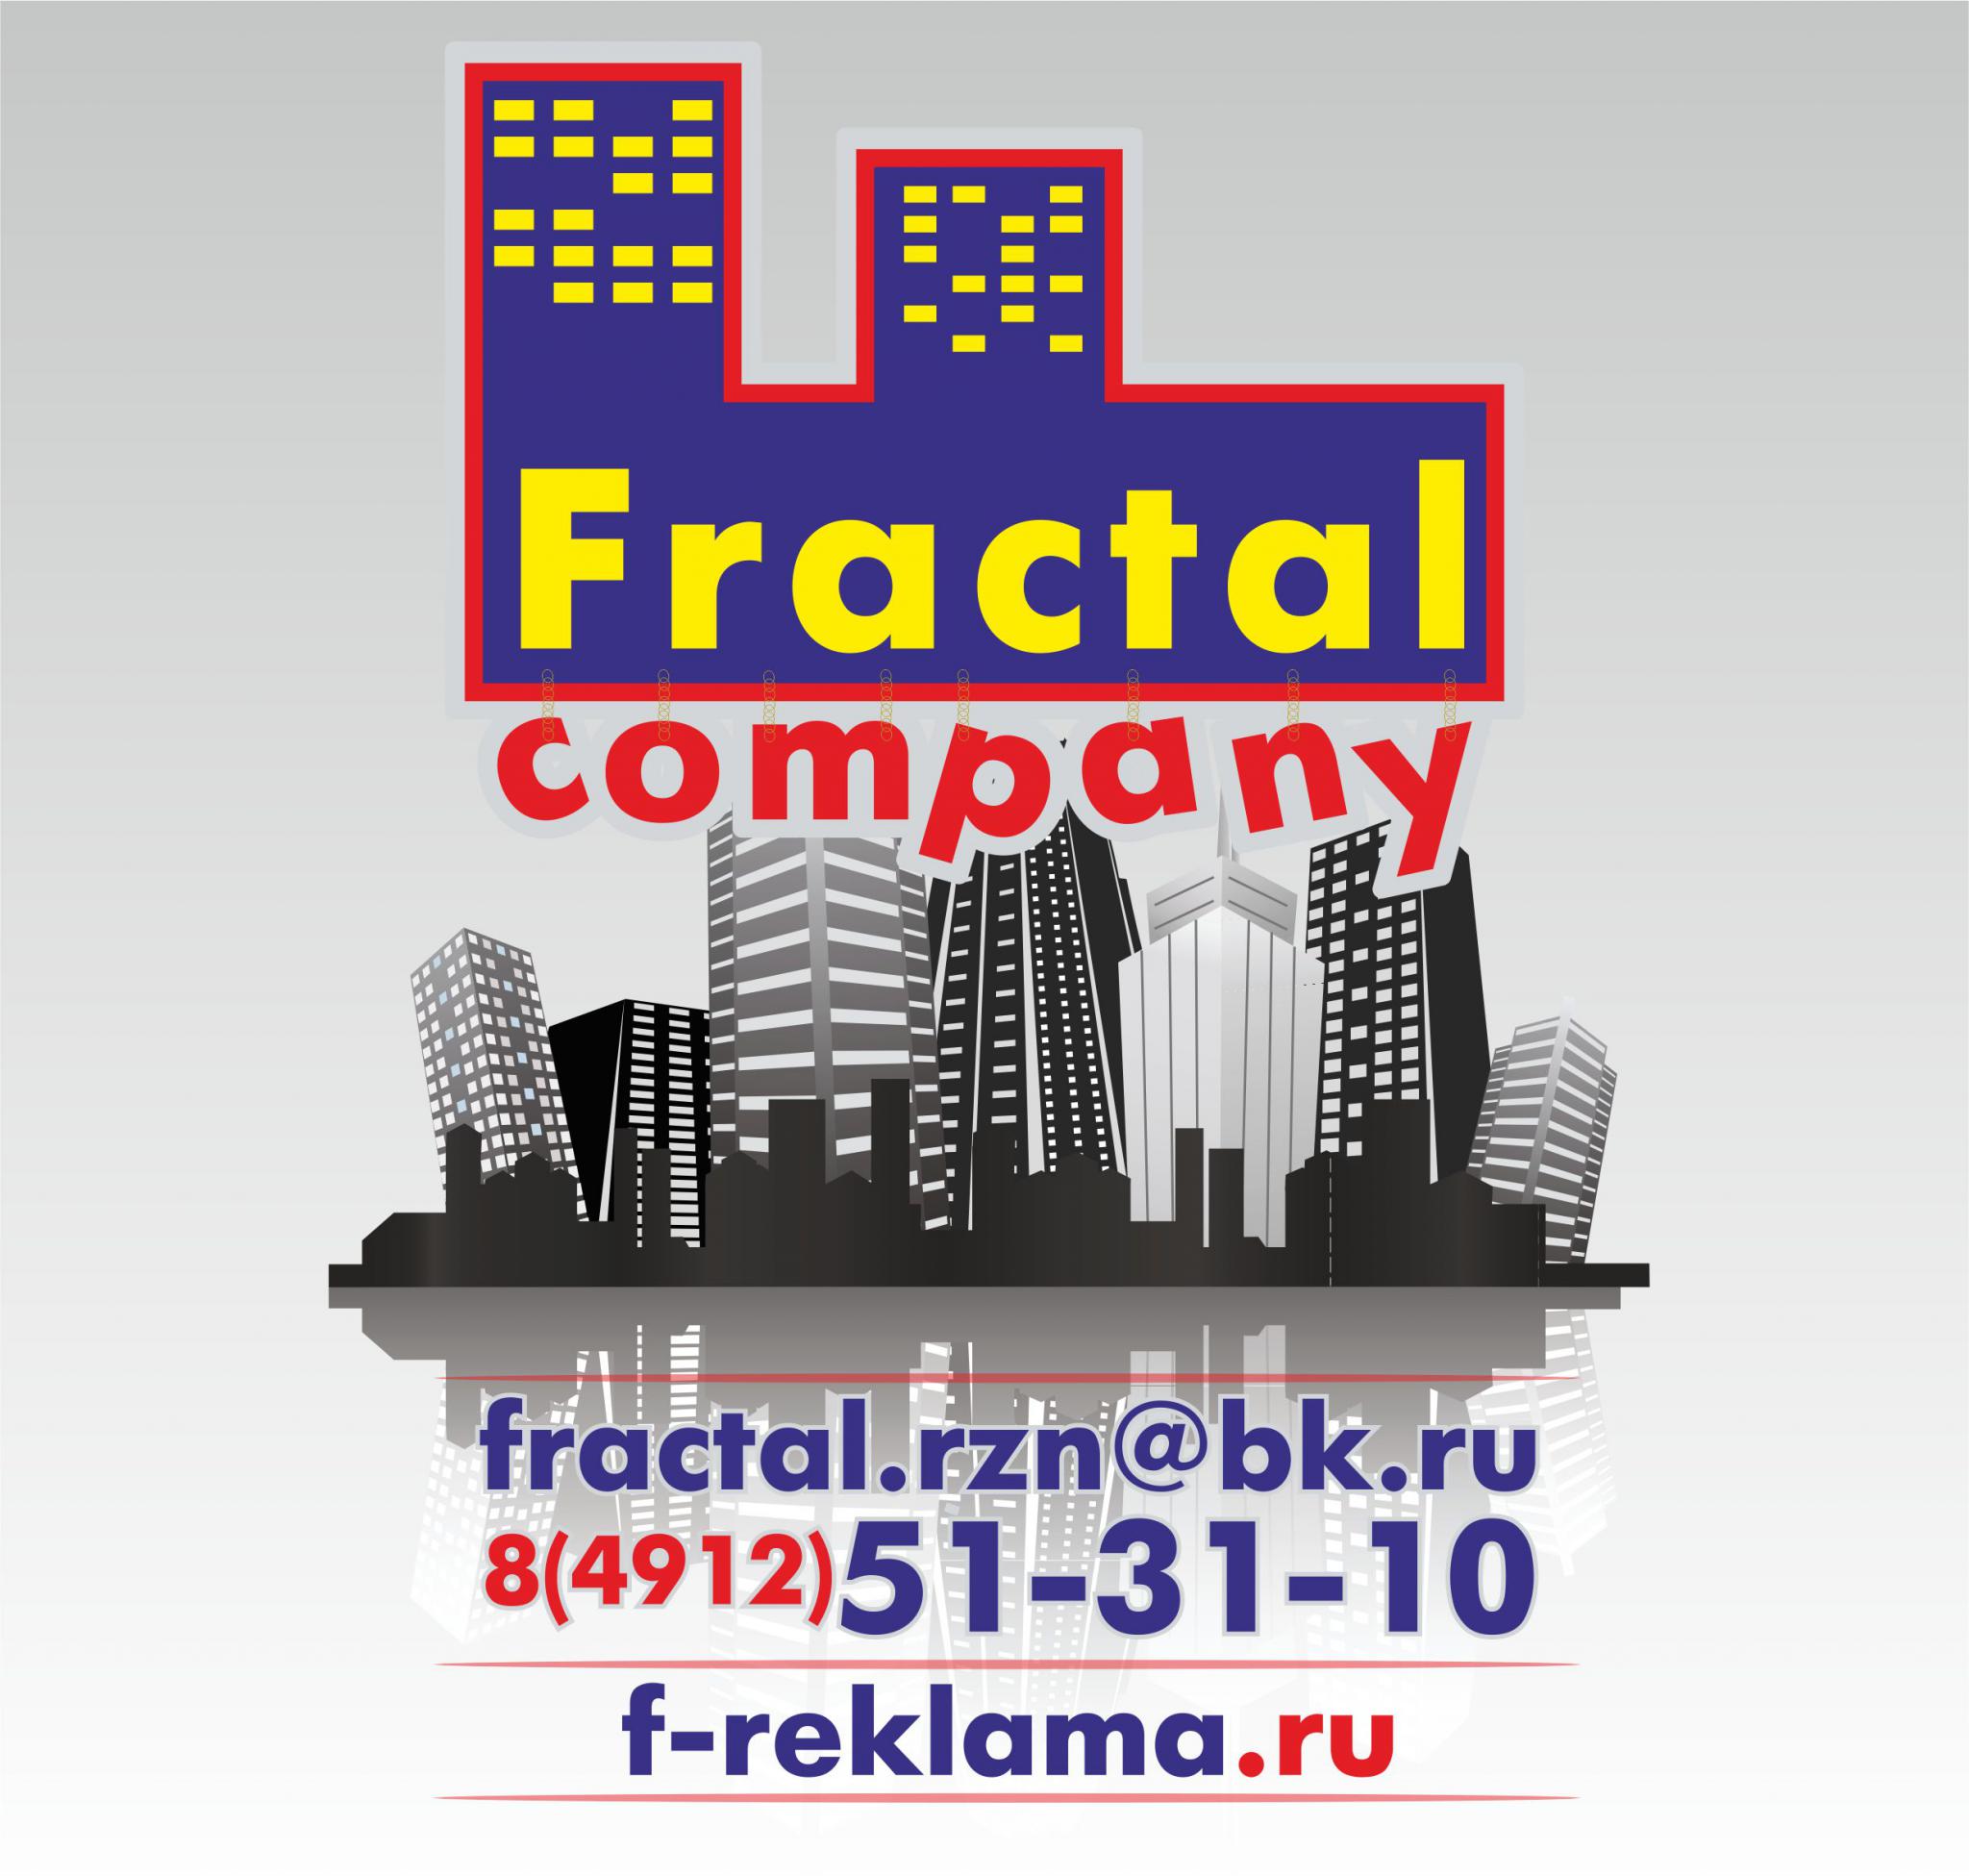 Fractal Company, Мастерская наружной рекламы